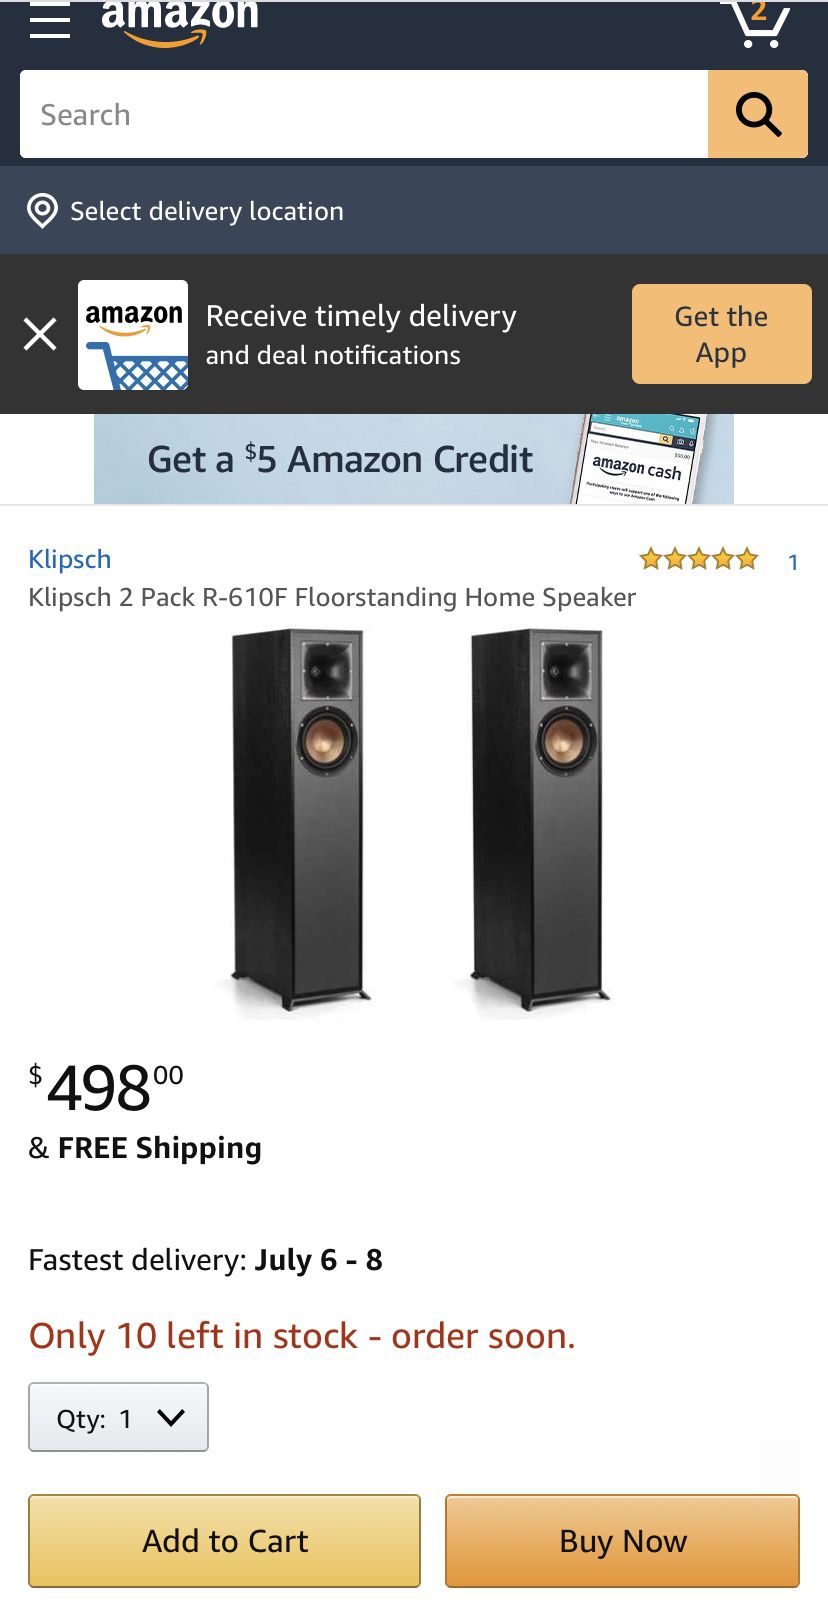 Klipsch 2 Pack R-610F Floorstanding Home Speaker - Brand new in box